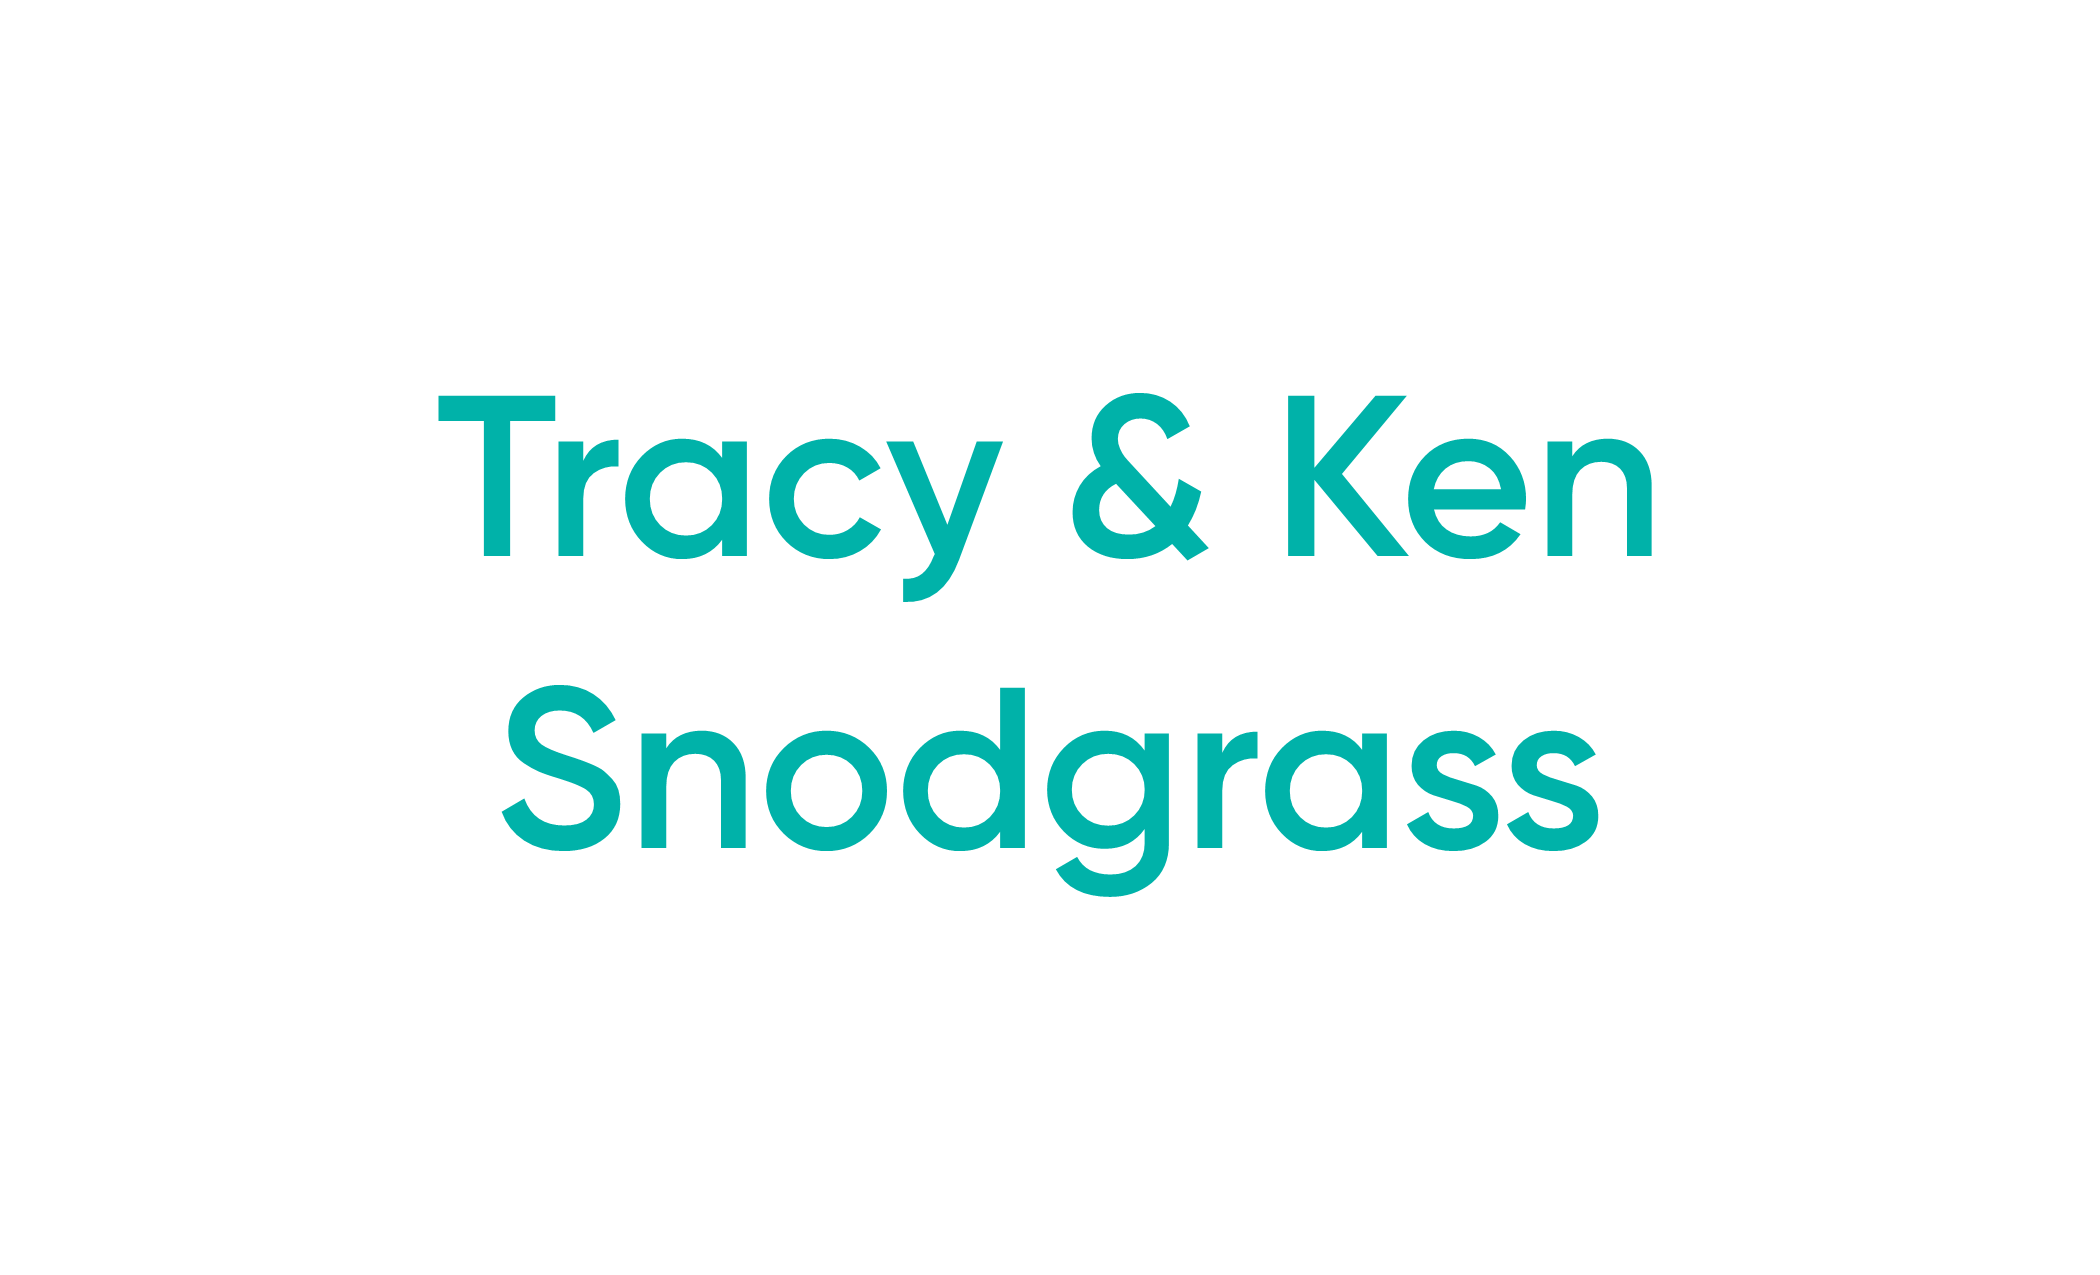 Tracy & Ken Snodgrass